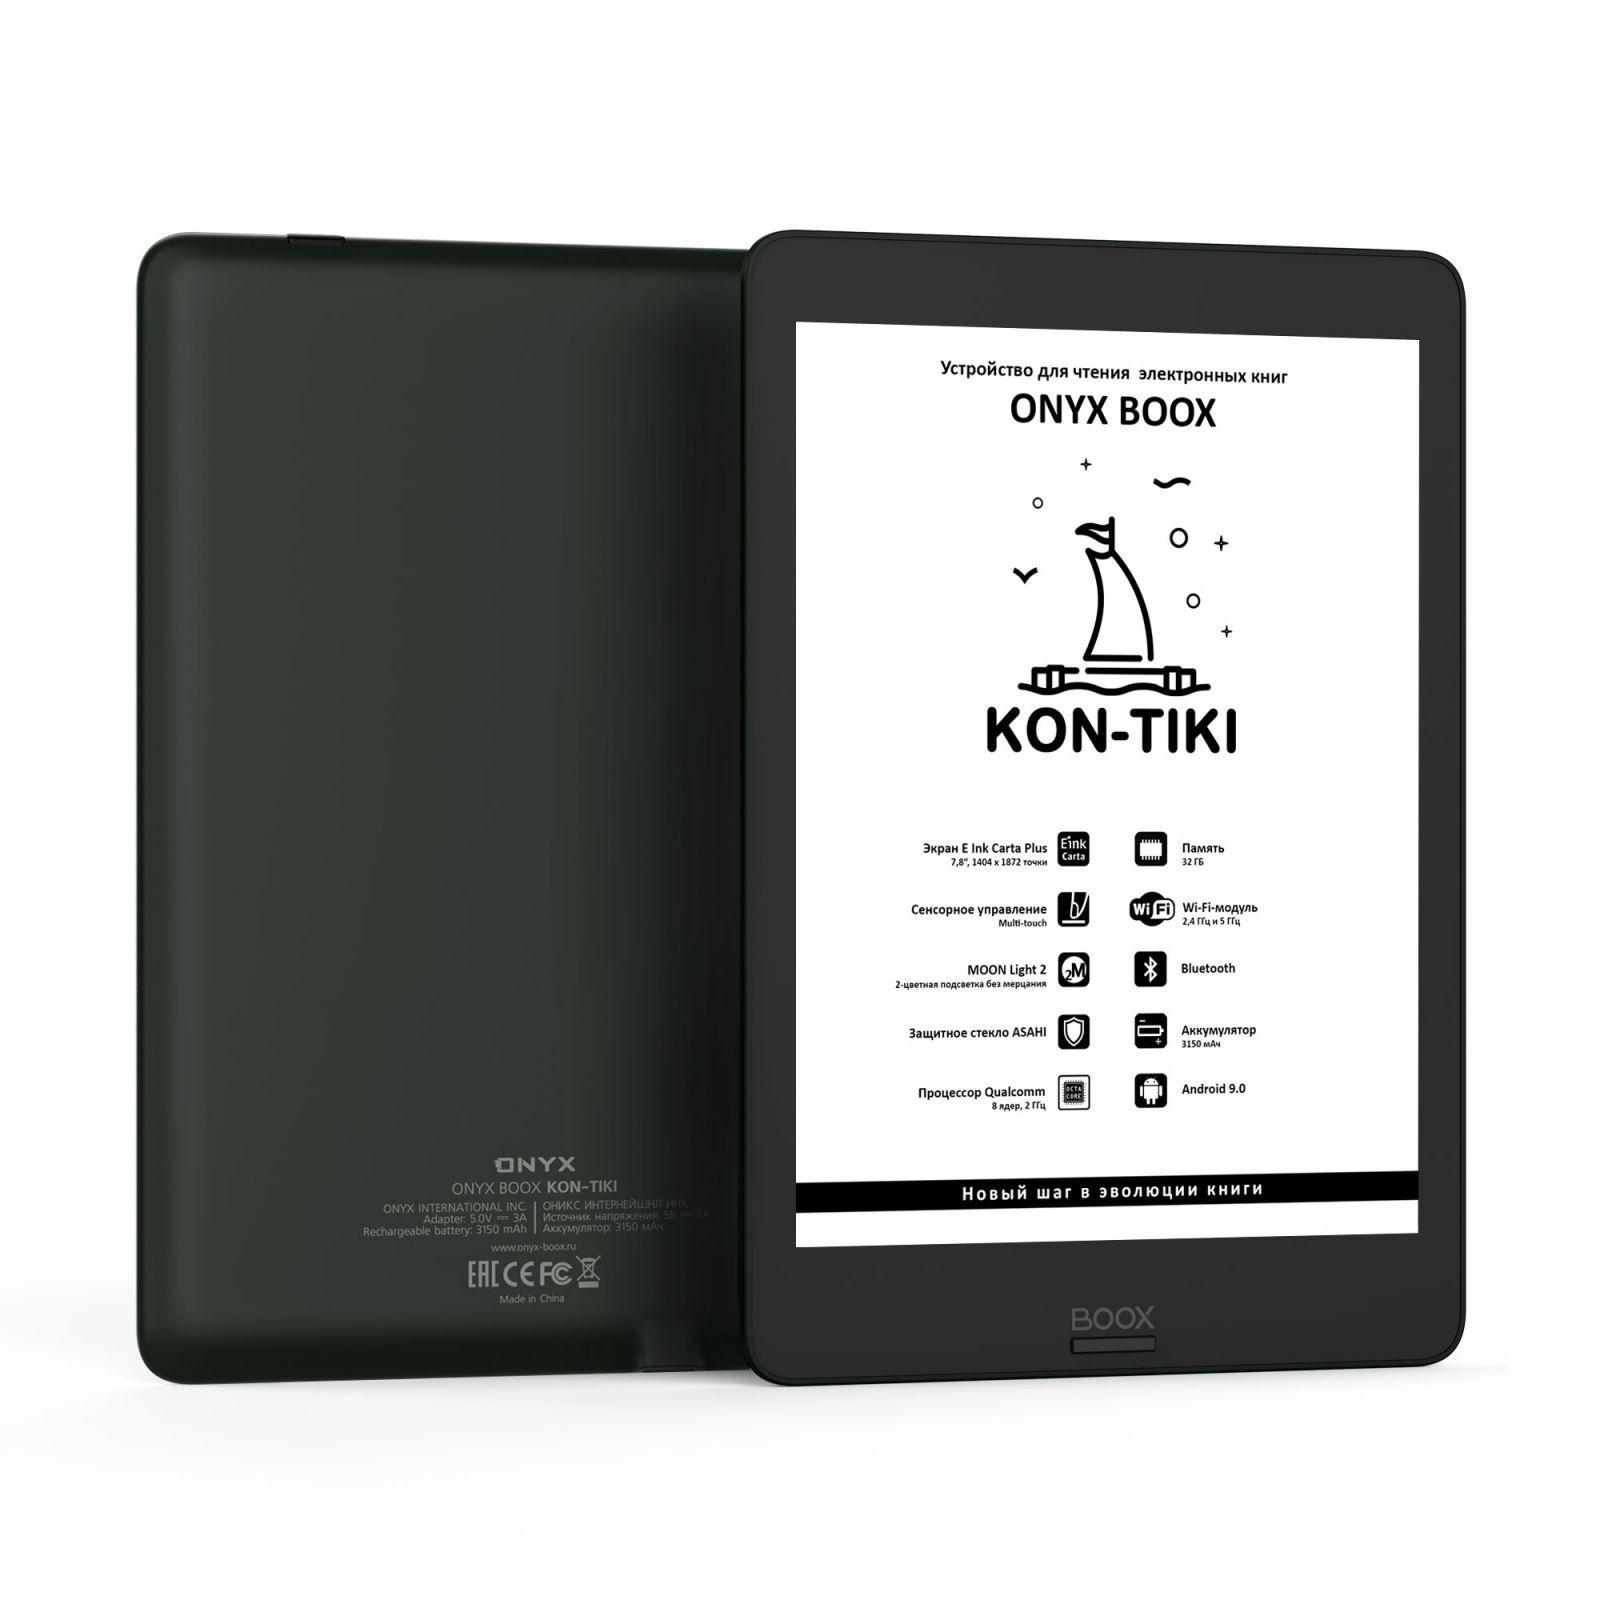 ONYX BOOX представили новый букридер Kon-Tiki для российского рынка (kon)